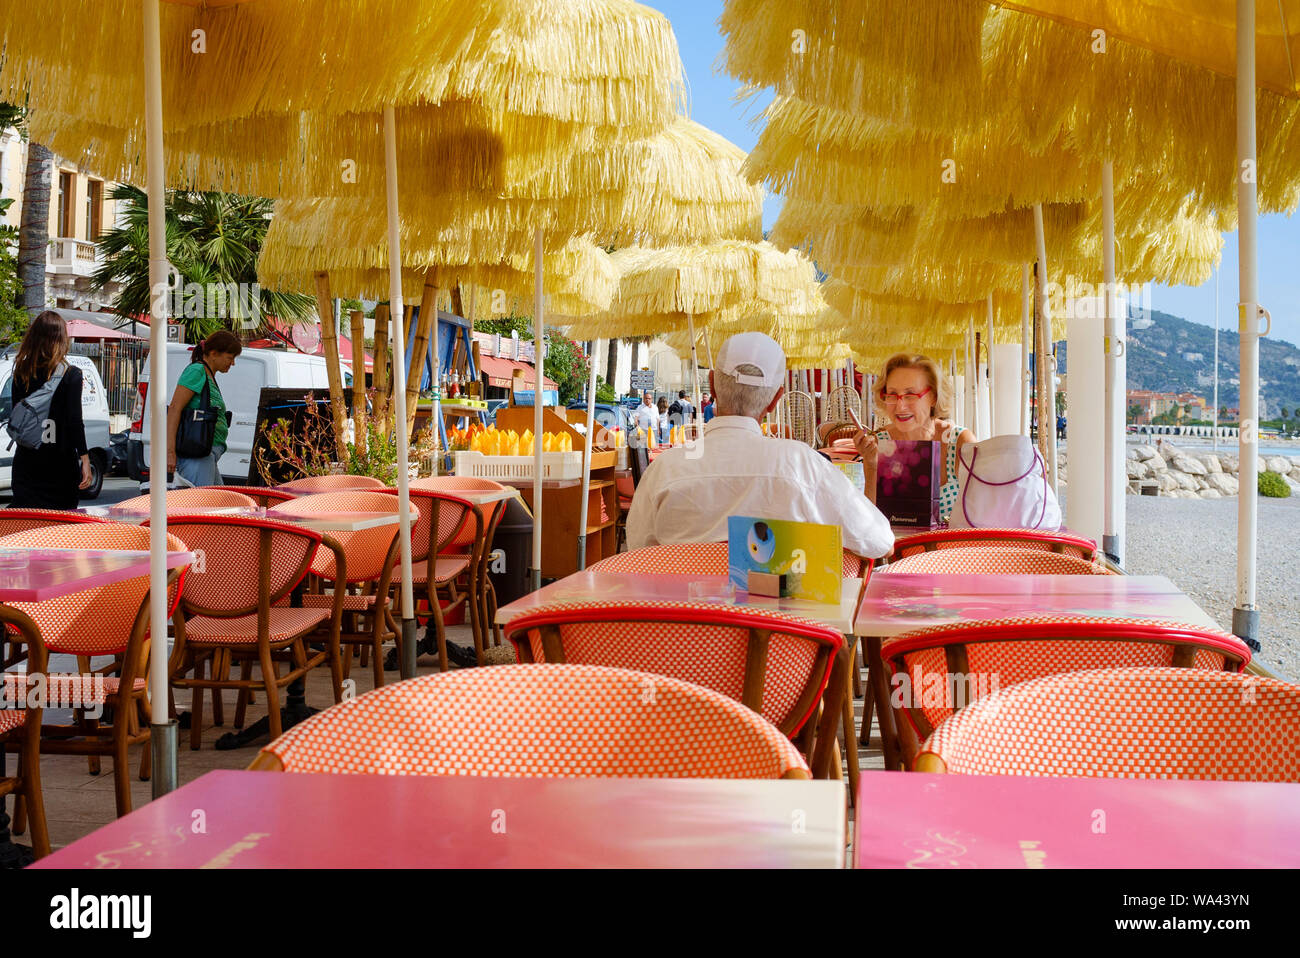 Coppia di anziani godetevi un pasto all'aperto in una spiaggia da street cafe / ristorante nella città vecchia di Mentone in Costa Azzurra nel sud della Francia Foto Stock